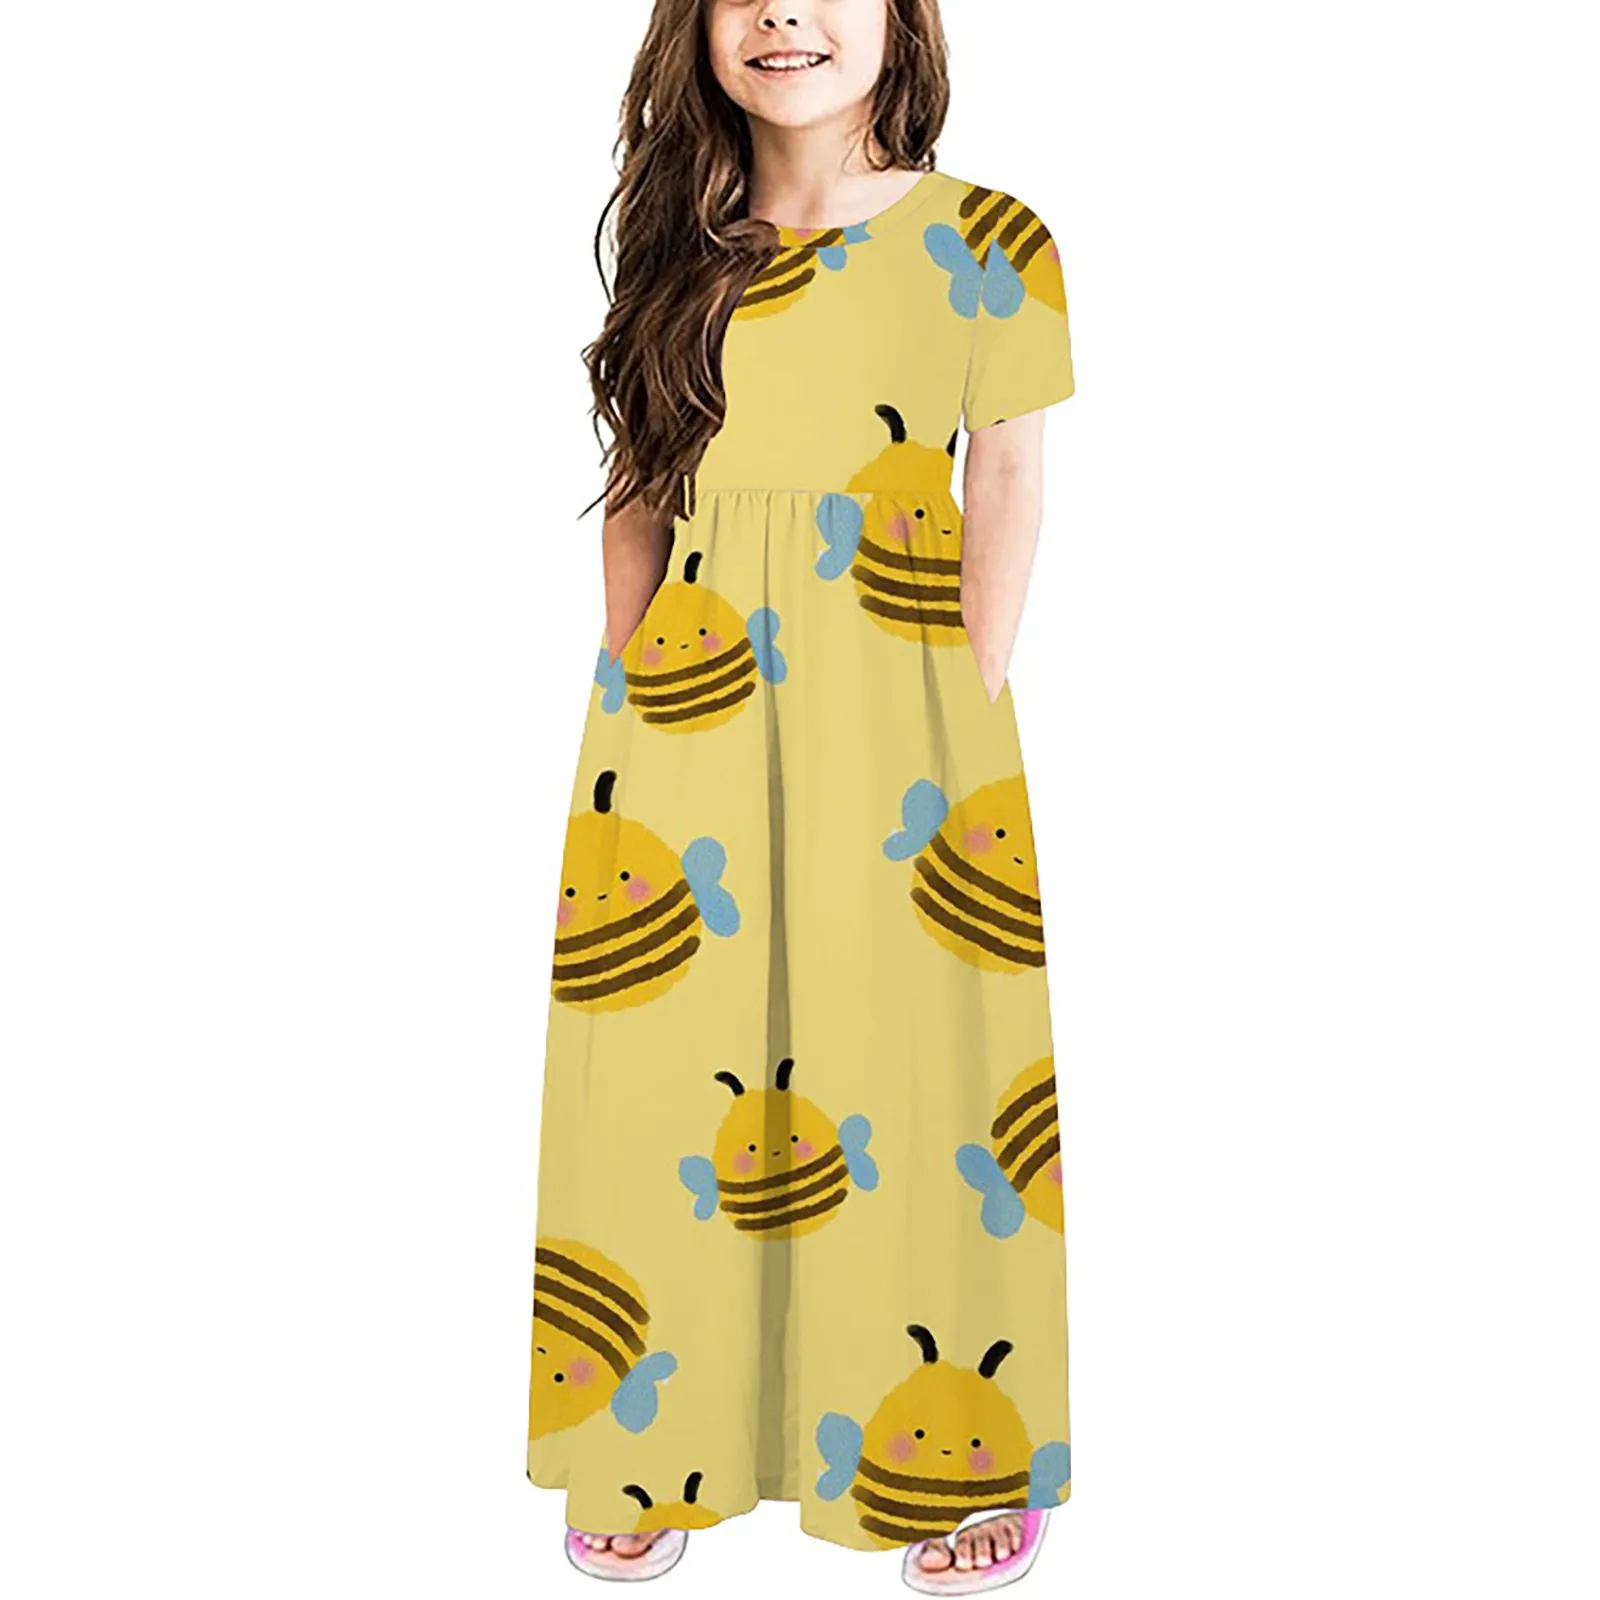 Летнее платье для маленьких девочек с милым мультяшным принтом, коротким рукавом, удобное и мягкое, подходит для весны-лета и платья для девочек 4 лет